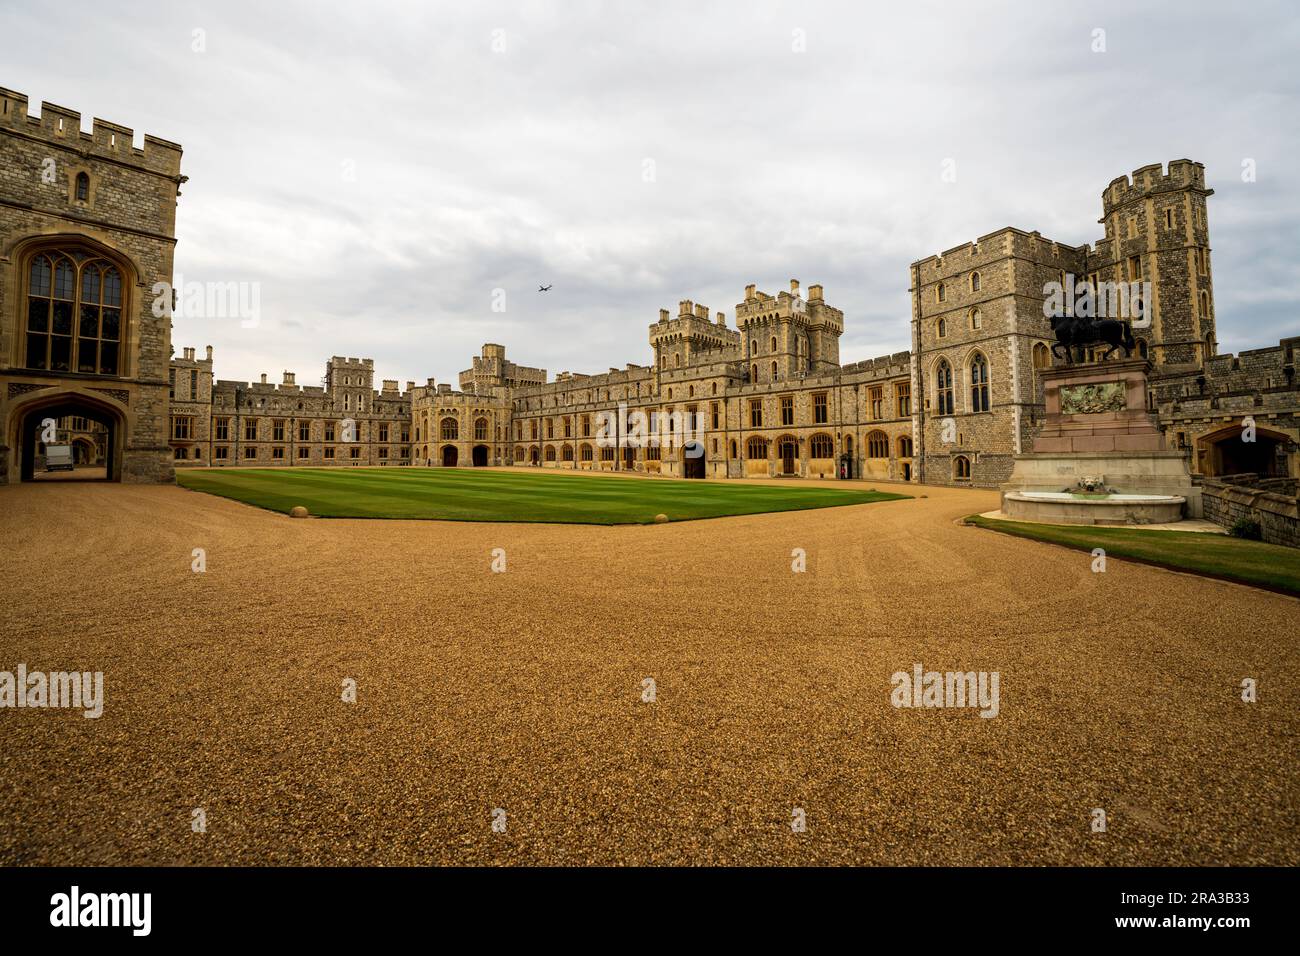 El Castillo de Windsor, una residencia real en Windsor Inglaterra, es el castillo ocupado más antiguo y más grande del mundo y el palacio ocupado más largo de Europa. Foto de stock